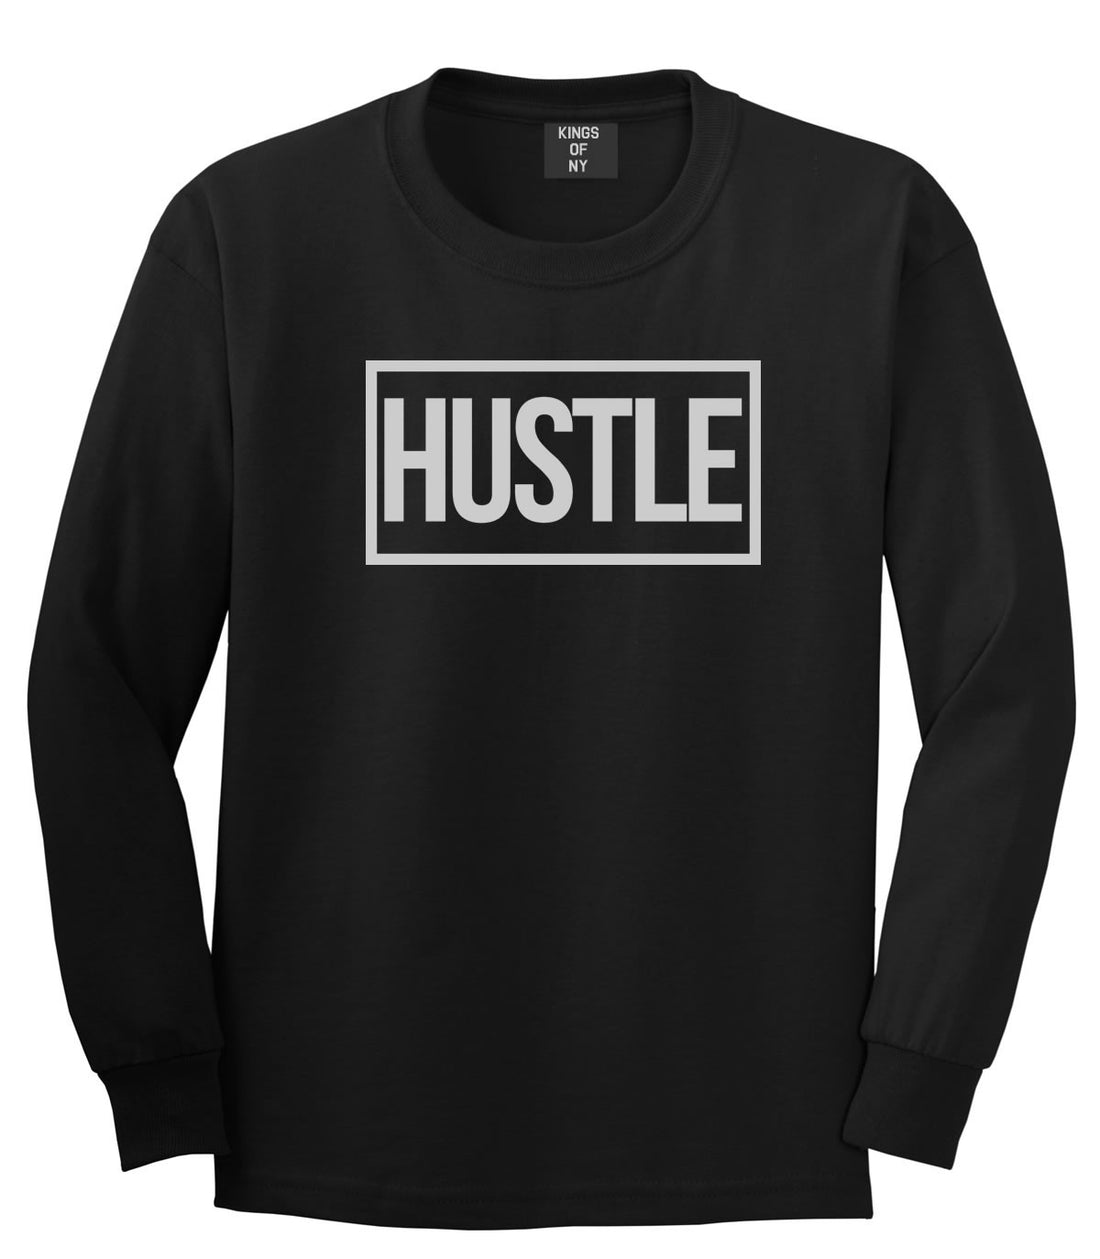 Hustle Long Sleeve T-Shirt